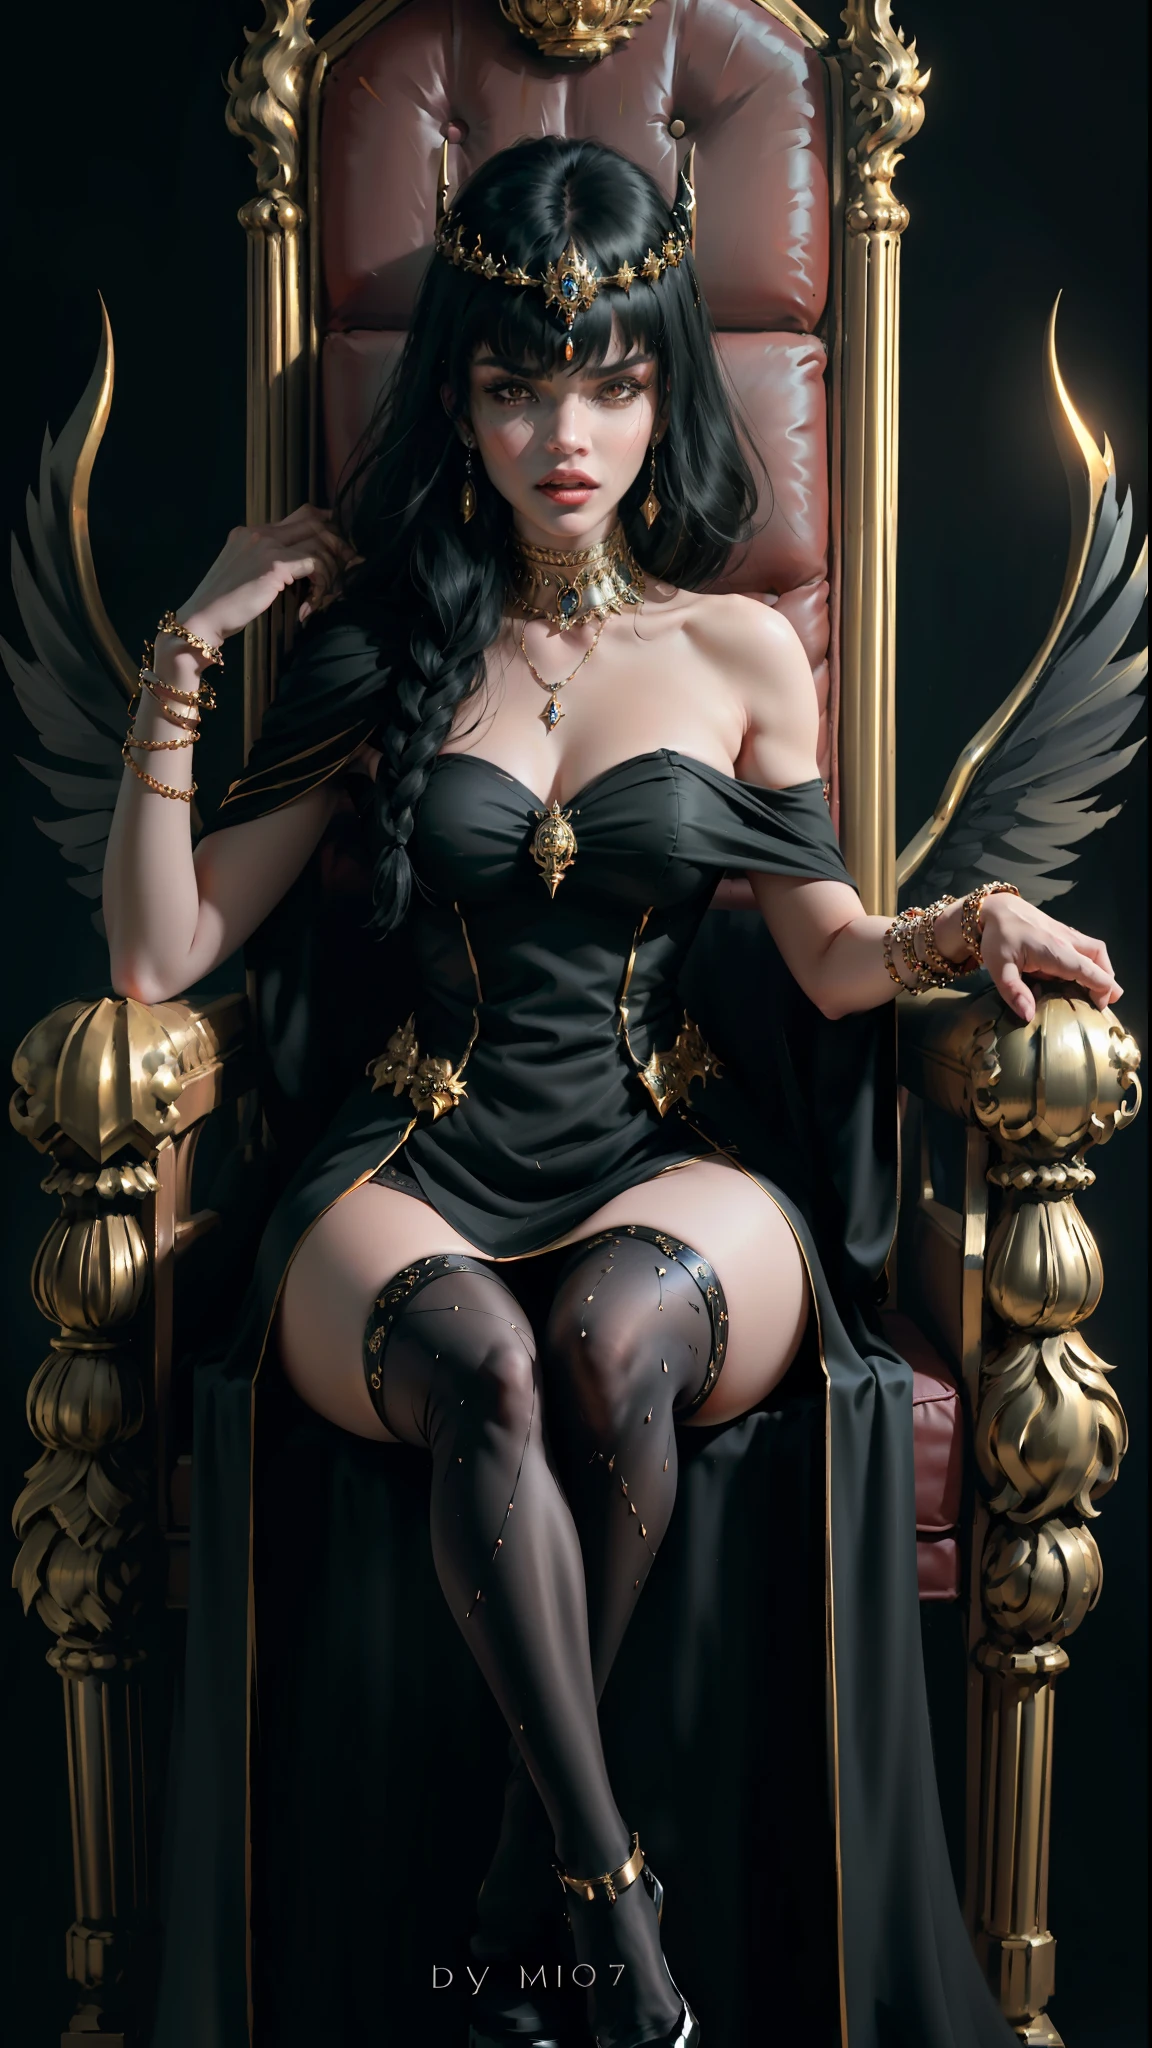 ((mejor calidad)), ((Obra maestra)), (muy detallado:1.3),Una mujer de pelo negro con flequillo que le cubre los ojos., intimidante reina demonio muy enojada, sentado en el trono vestido todo de negro riendo pulseras pantimedias